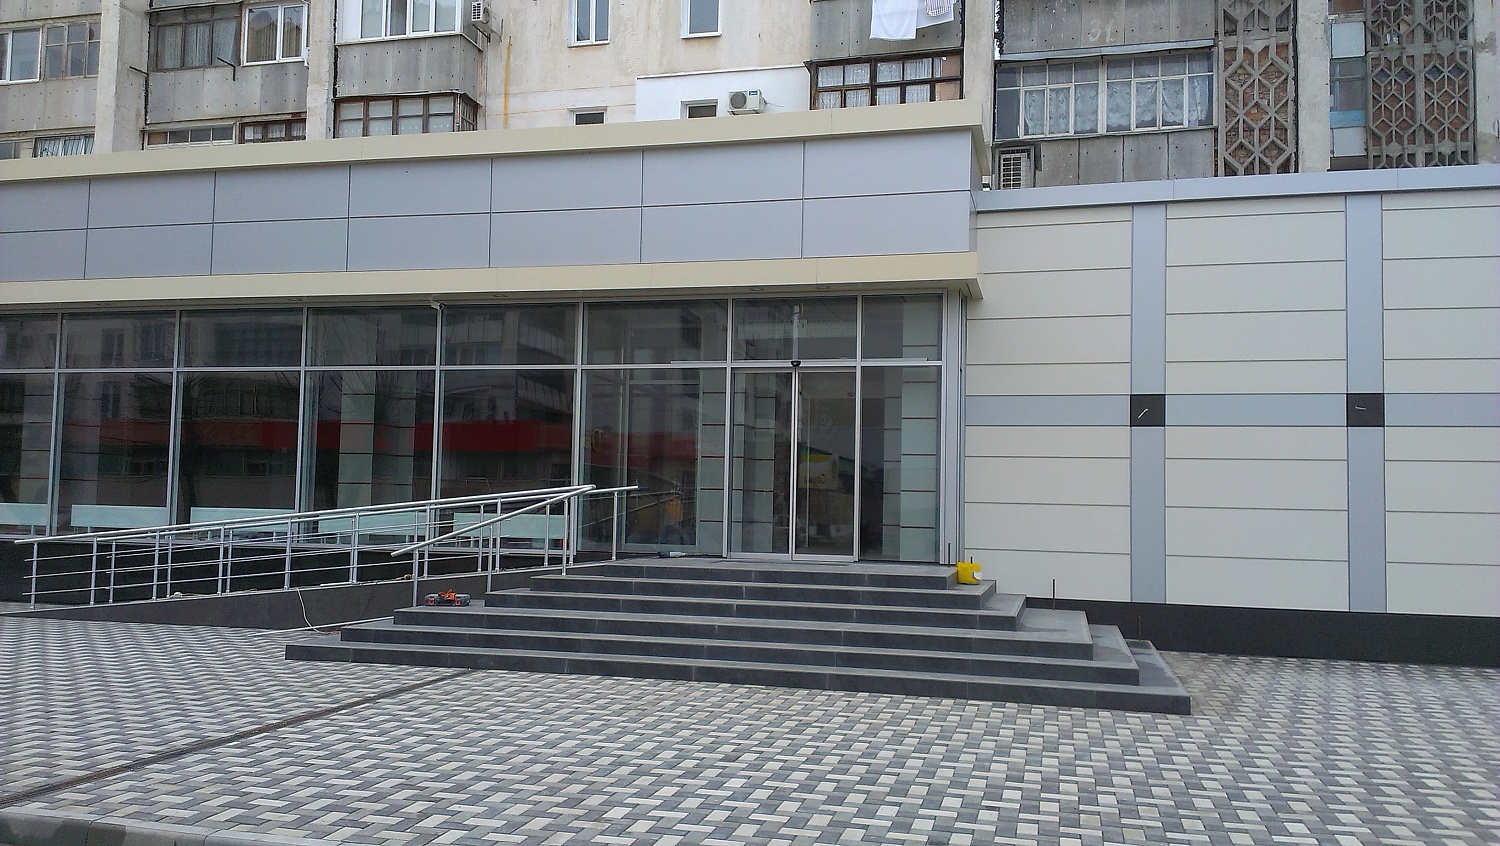 Заказать установку автоматических дверей в Севастополе. Монтаж выполняется командой профессионалов с опытом работы более 9 лет. 